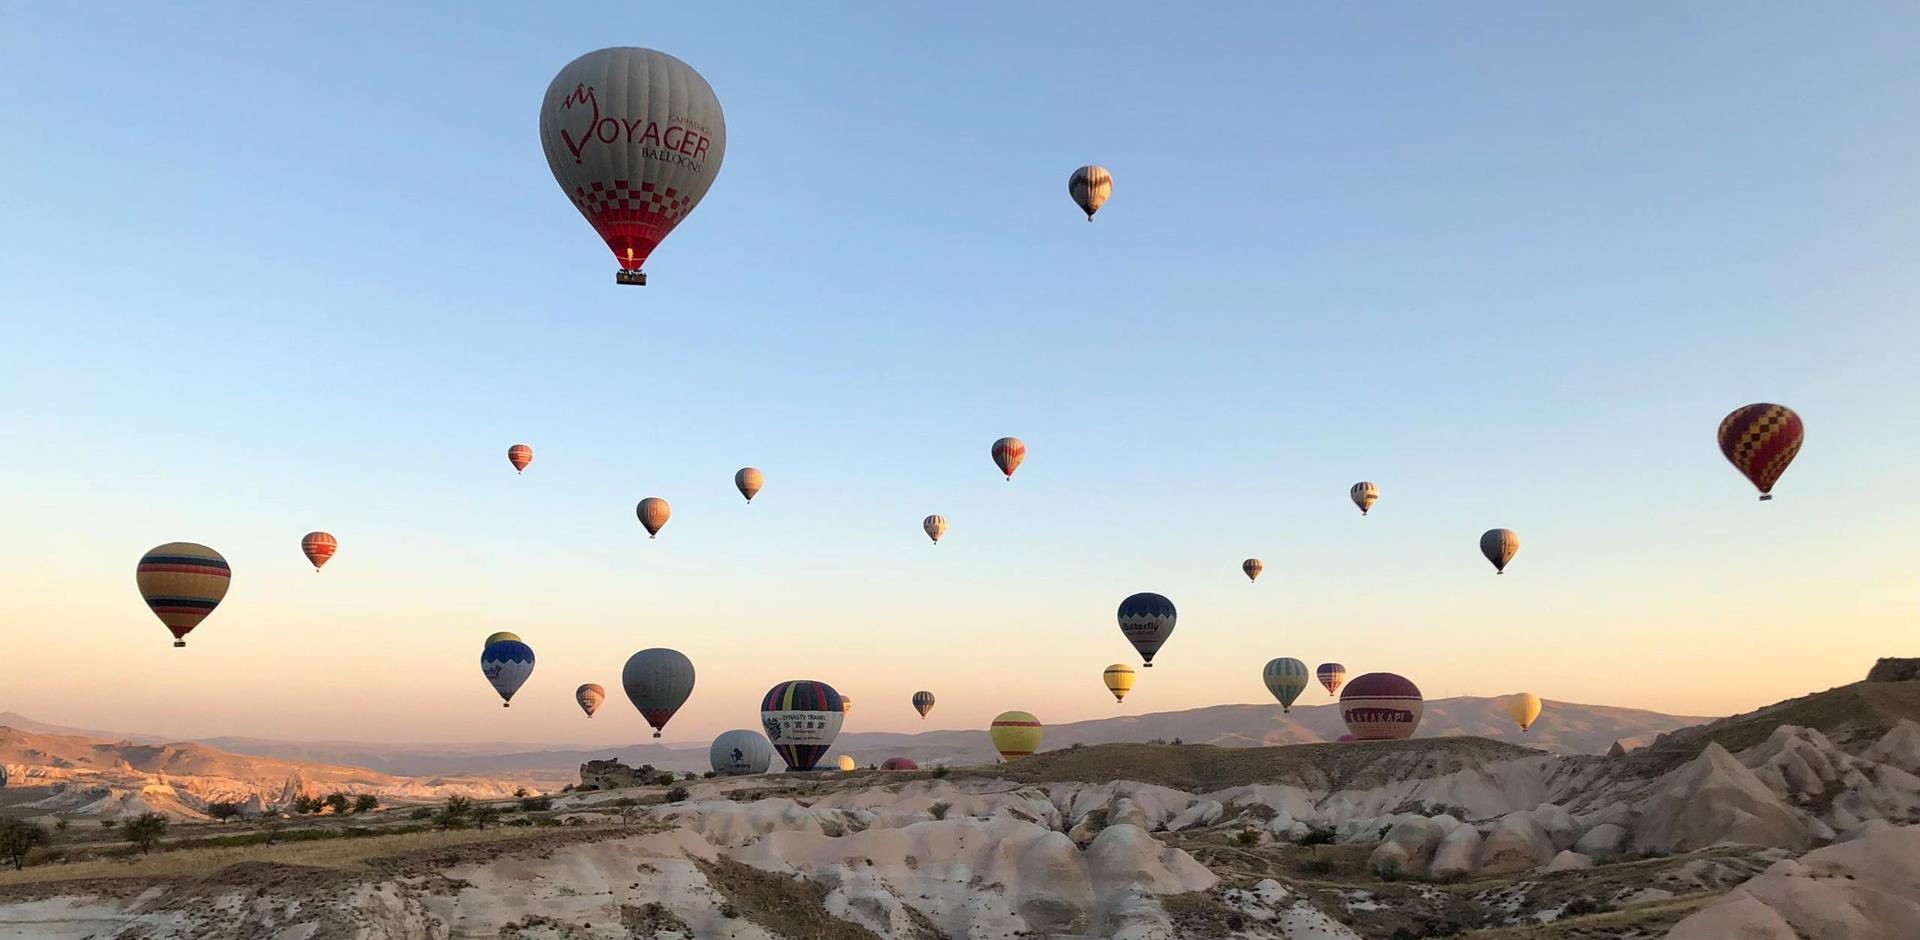 Balloon ride over Cappadocia, Turkey